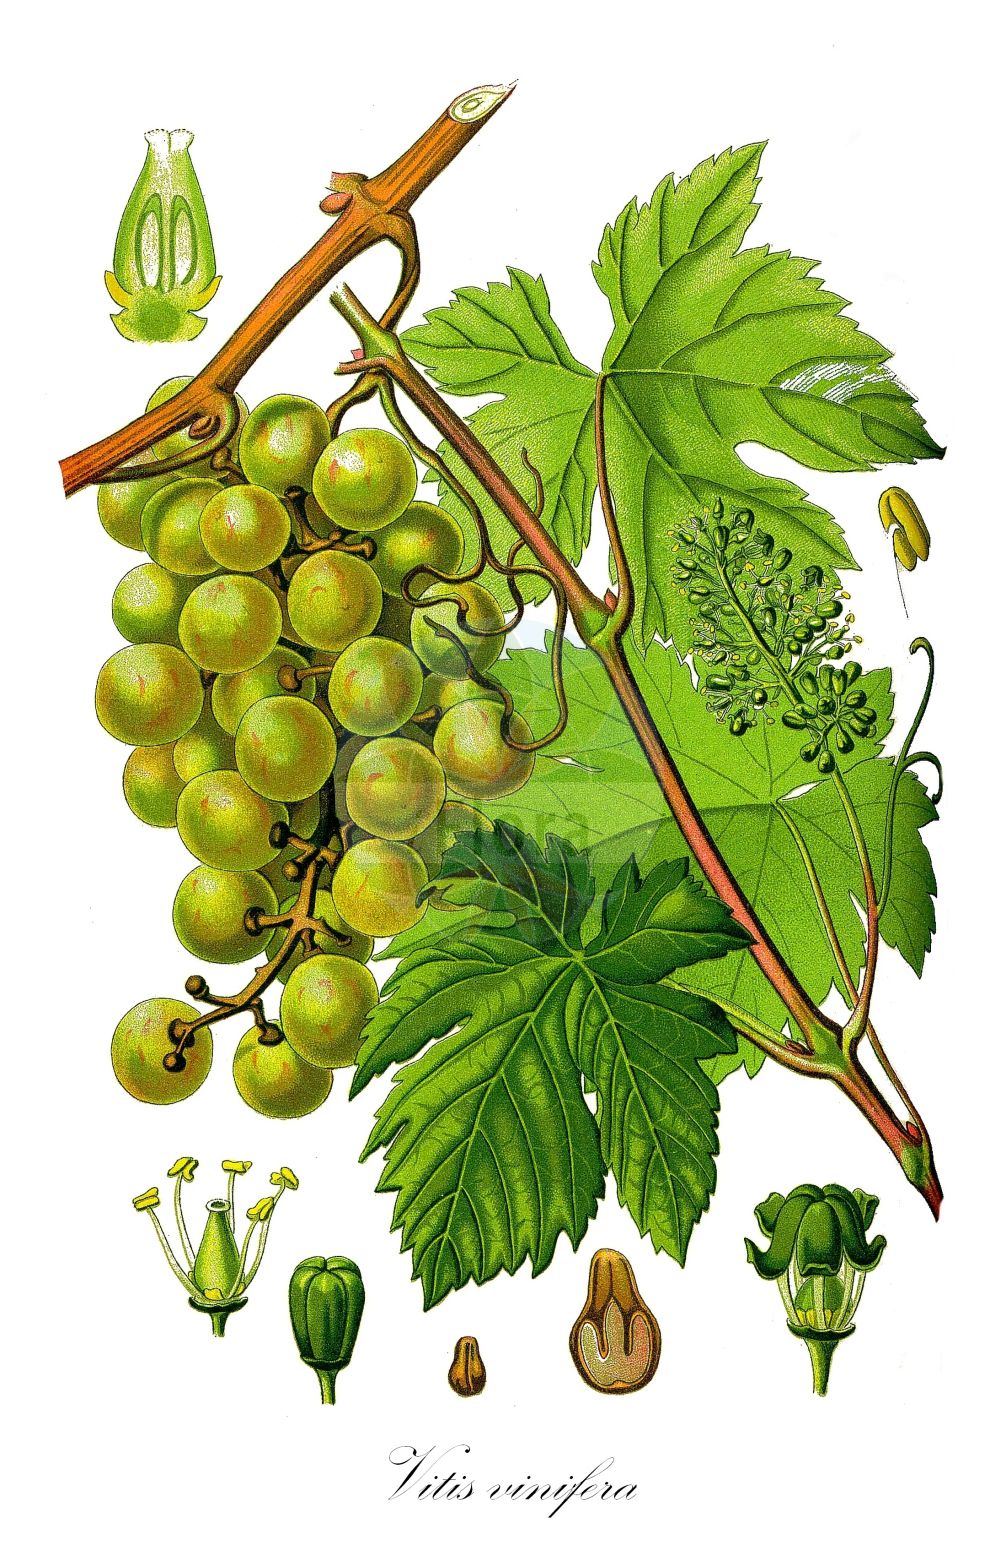 Historische Abbildung von Vitis vinifera (Weinrebe - Grape-vine). ---- Historical Drawing of Vitis vinifera (Weinrebe - Grape-vine).(Vitis vinifera,Weinrebe,Grape-vine,Cissus vinifera,Vitis laciniosa,Vitis sylvestris,Vitis vinifera,Vitis vinifera var. sylvestris,Weinrebe,Echte Weinrebe,Kultur-Weinrebe,Grape-vine,Common Grapevine,Wine Grape,European Grape,Wild Grape,Vitis,Rebe,Grapevine,Vitaceae,Weingewächse,Grape family,Thomé (1885))